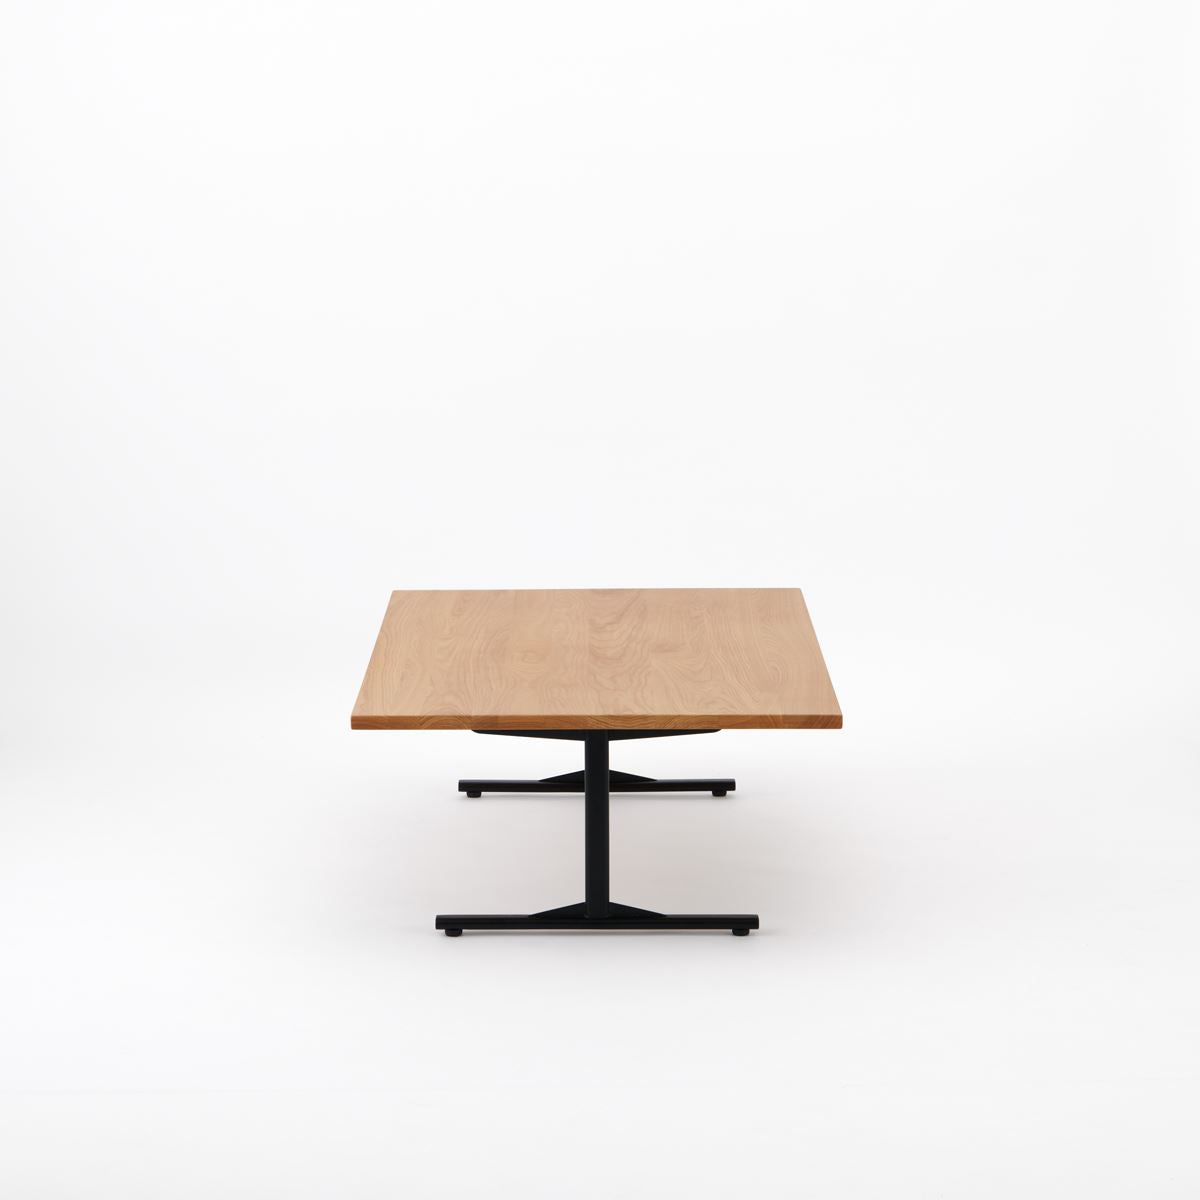 KUUM Living Table W1200 × D800 - オーク突板ナチュラル / クーム リビング テーブル